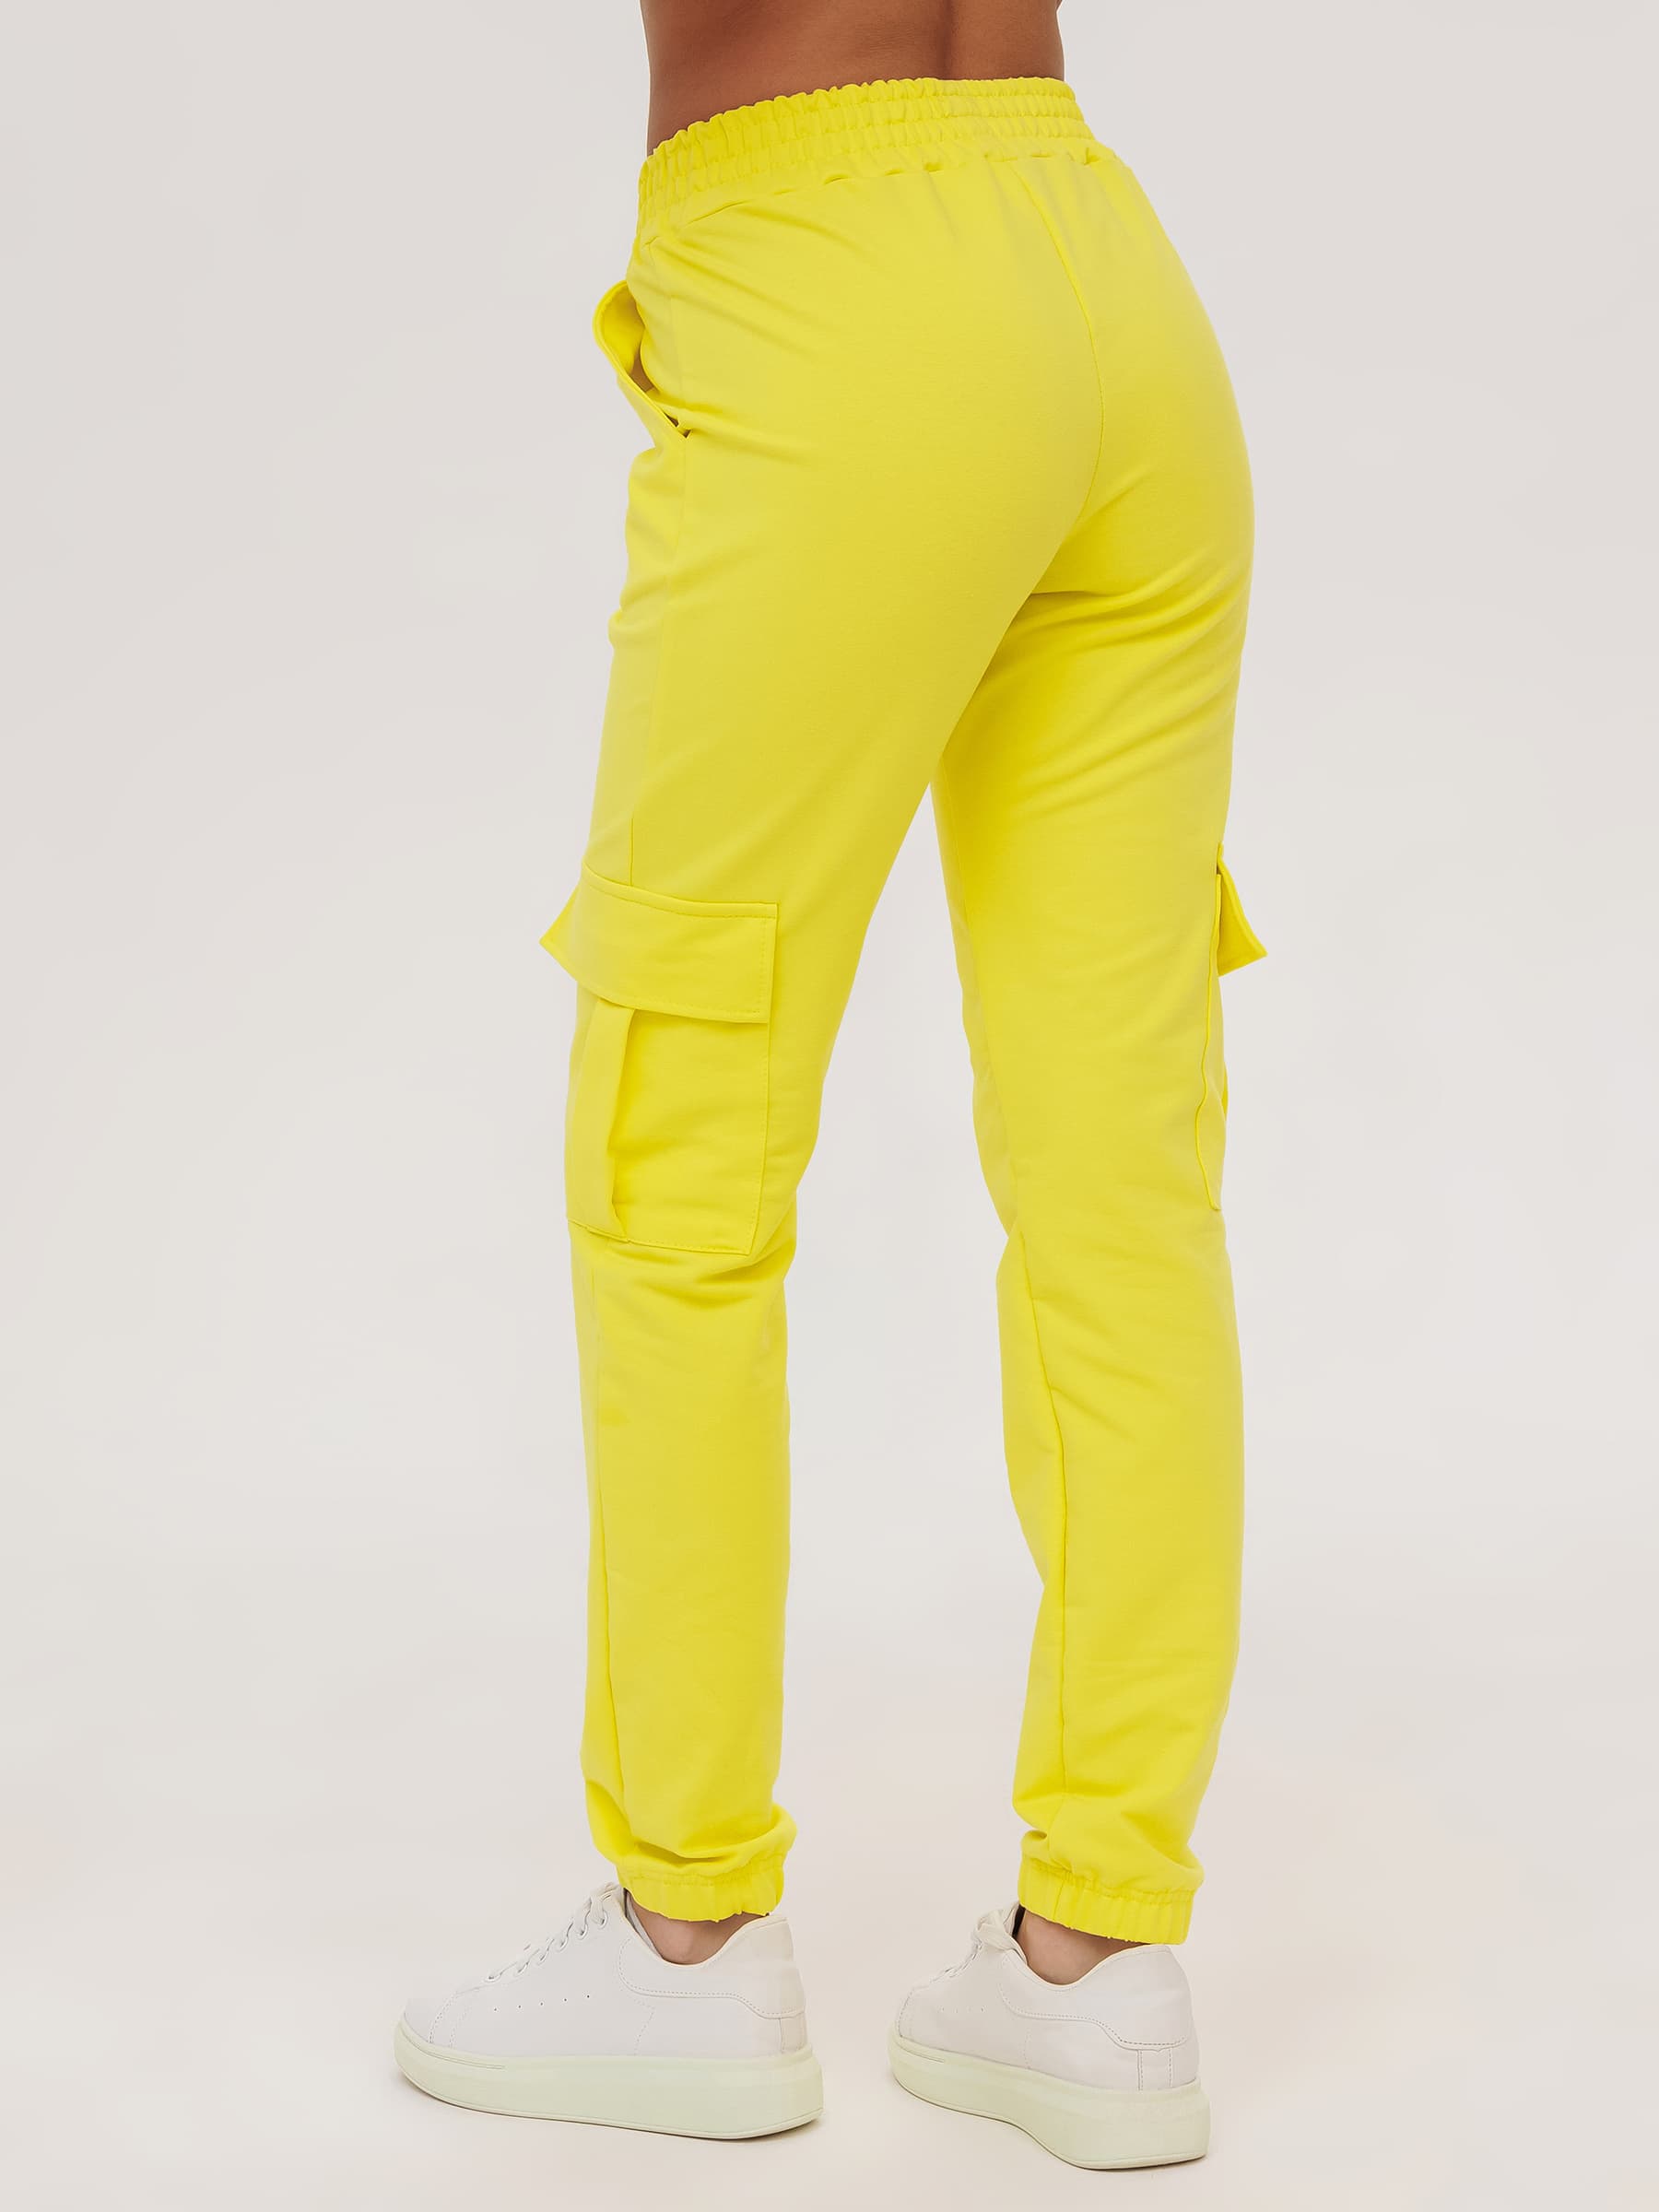 Жен. брюки повседневные арт. 23-0524 Желтый р. 44 Моделлини, размер 44 - фото 7